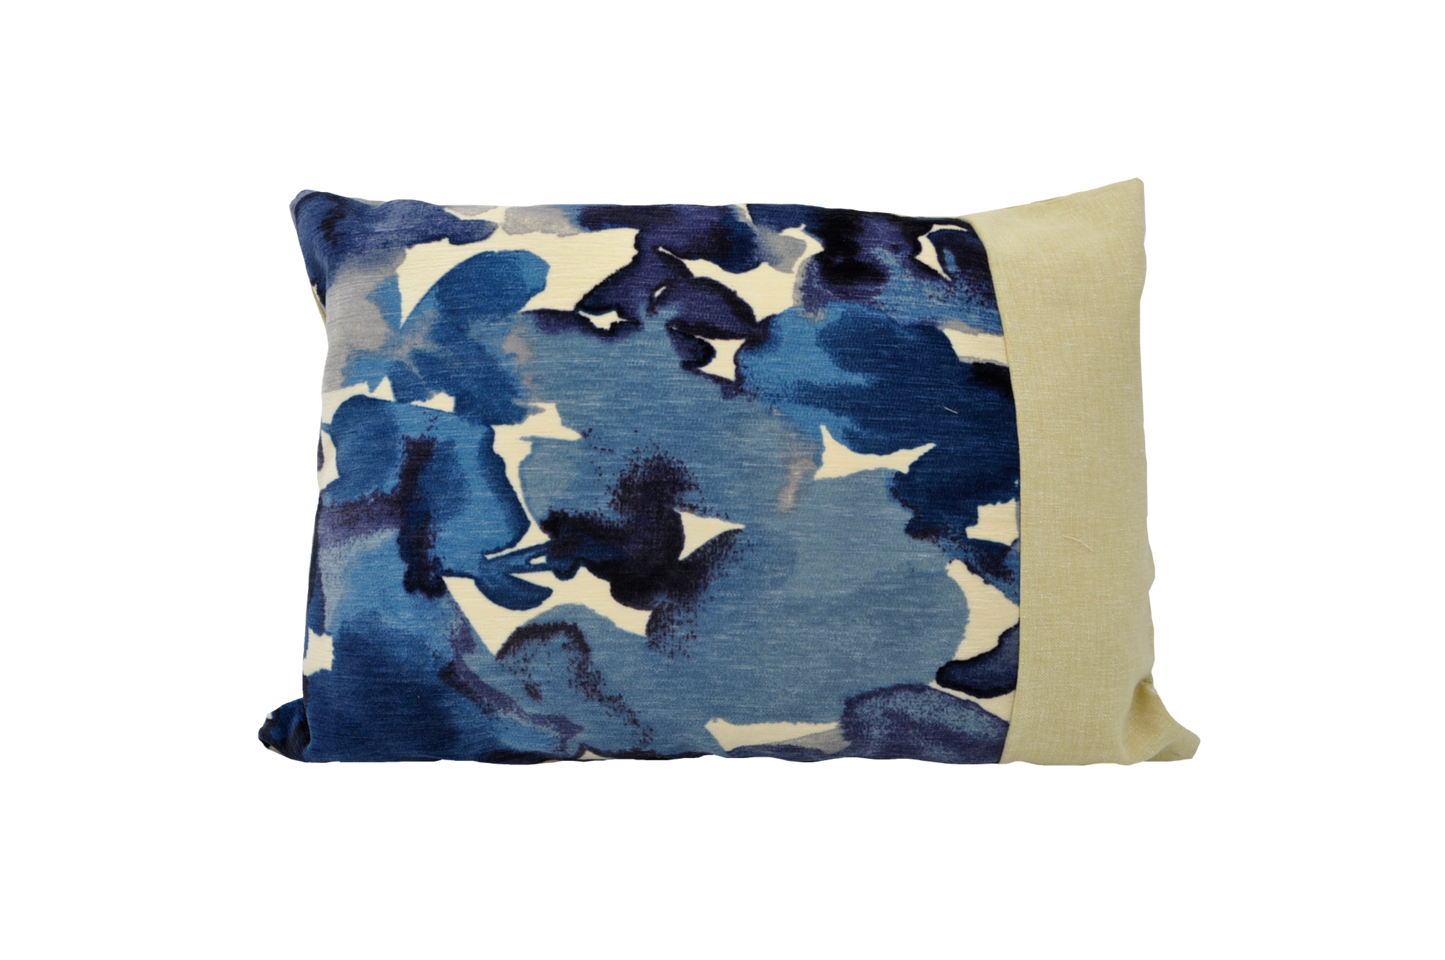 Blue Watercolour - Sustainable Décor Pillows